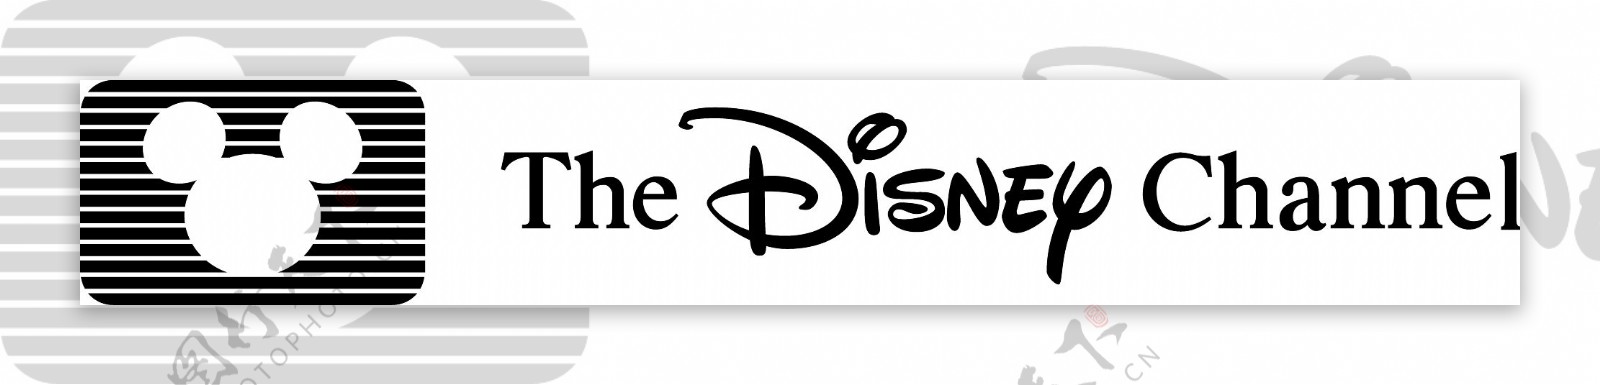 迪士尼频道的标志